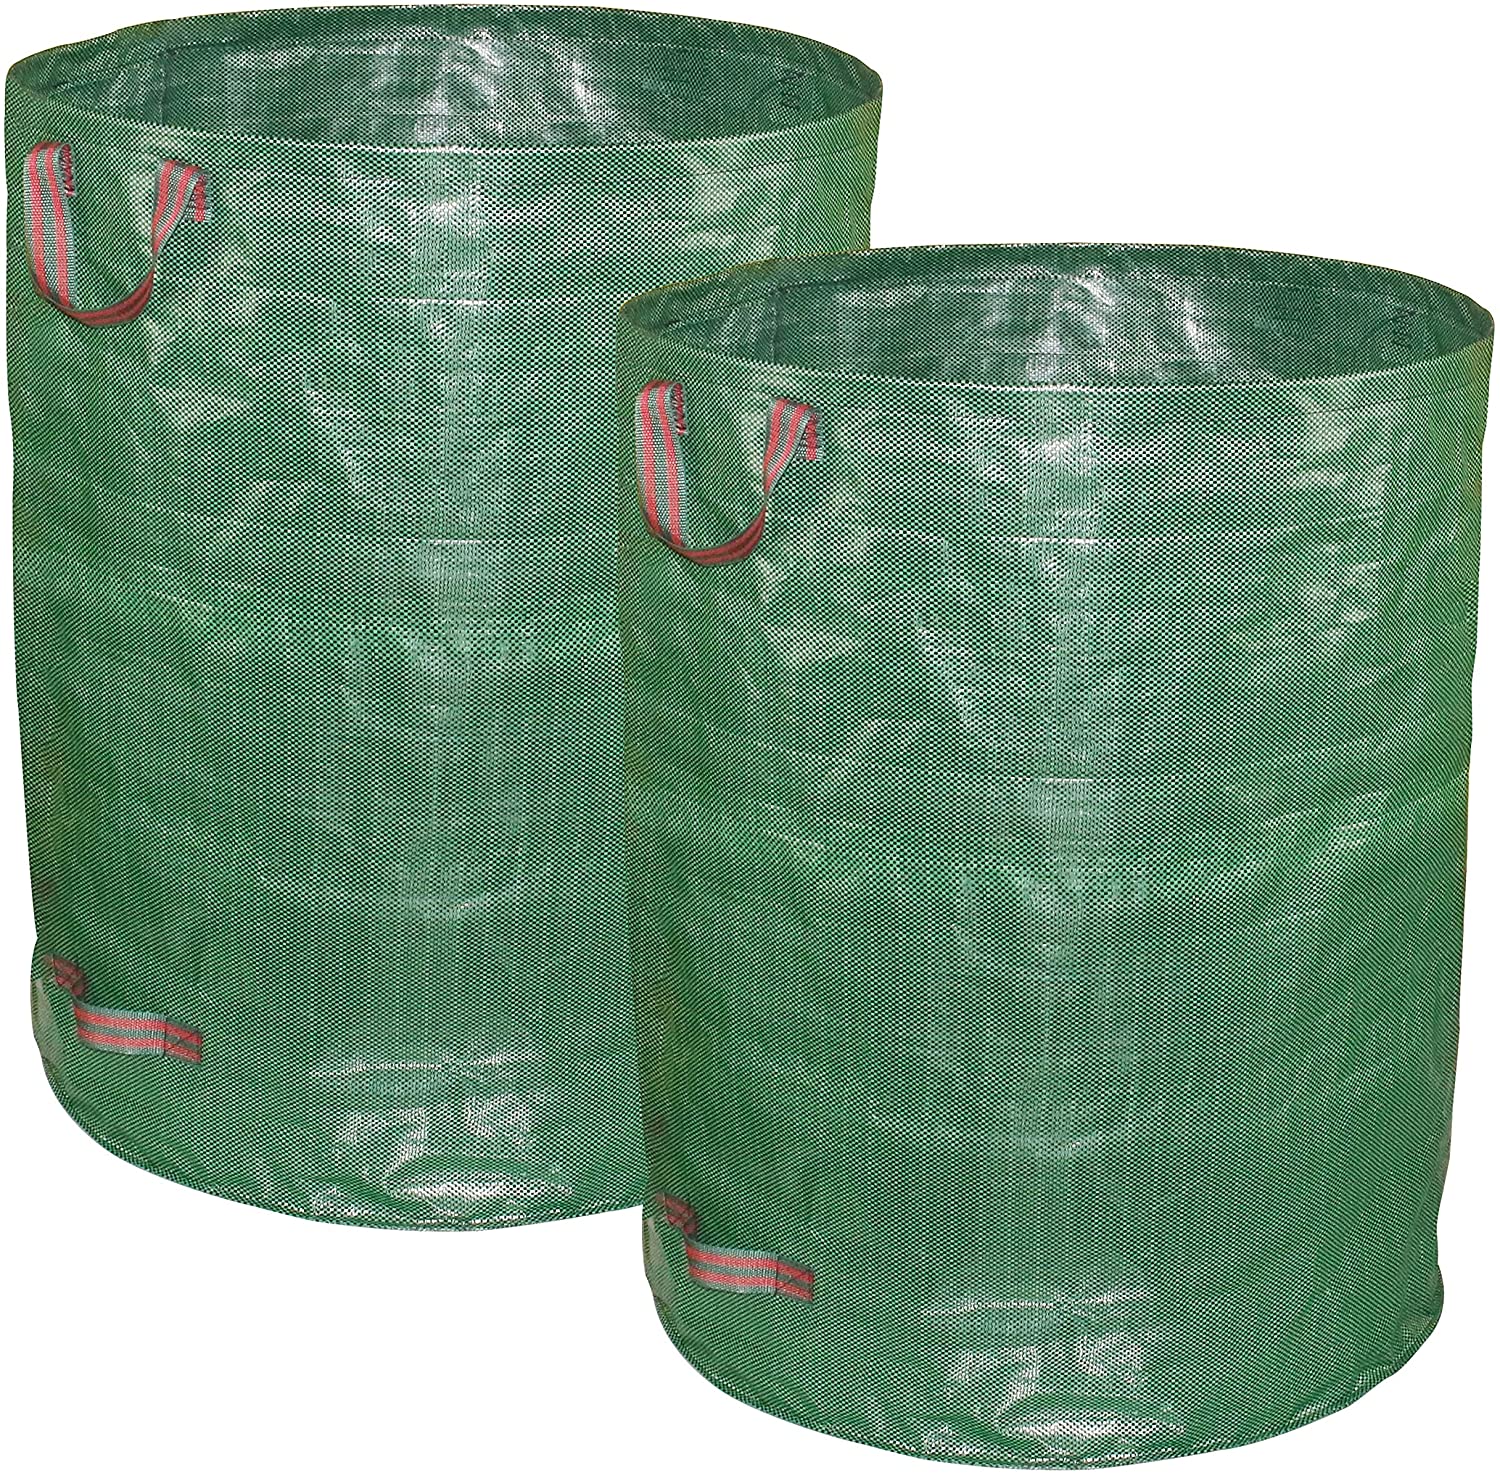 Складной складной большой сверхмощный мешок для садовых зеленых отходов холст 90 литров 280 литров 300 л гигантский